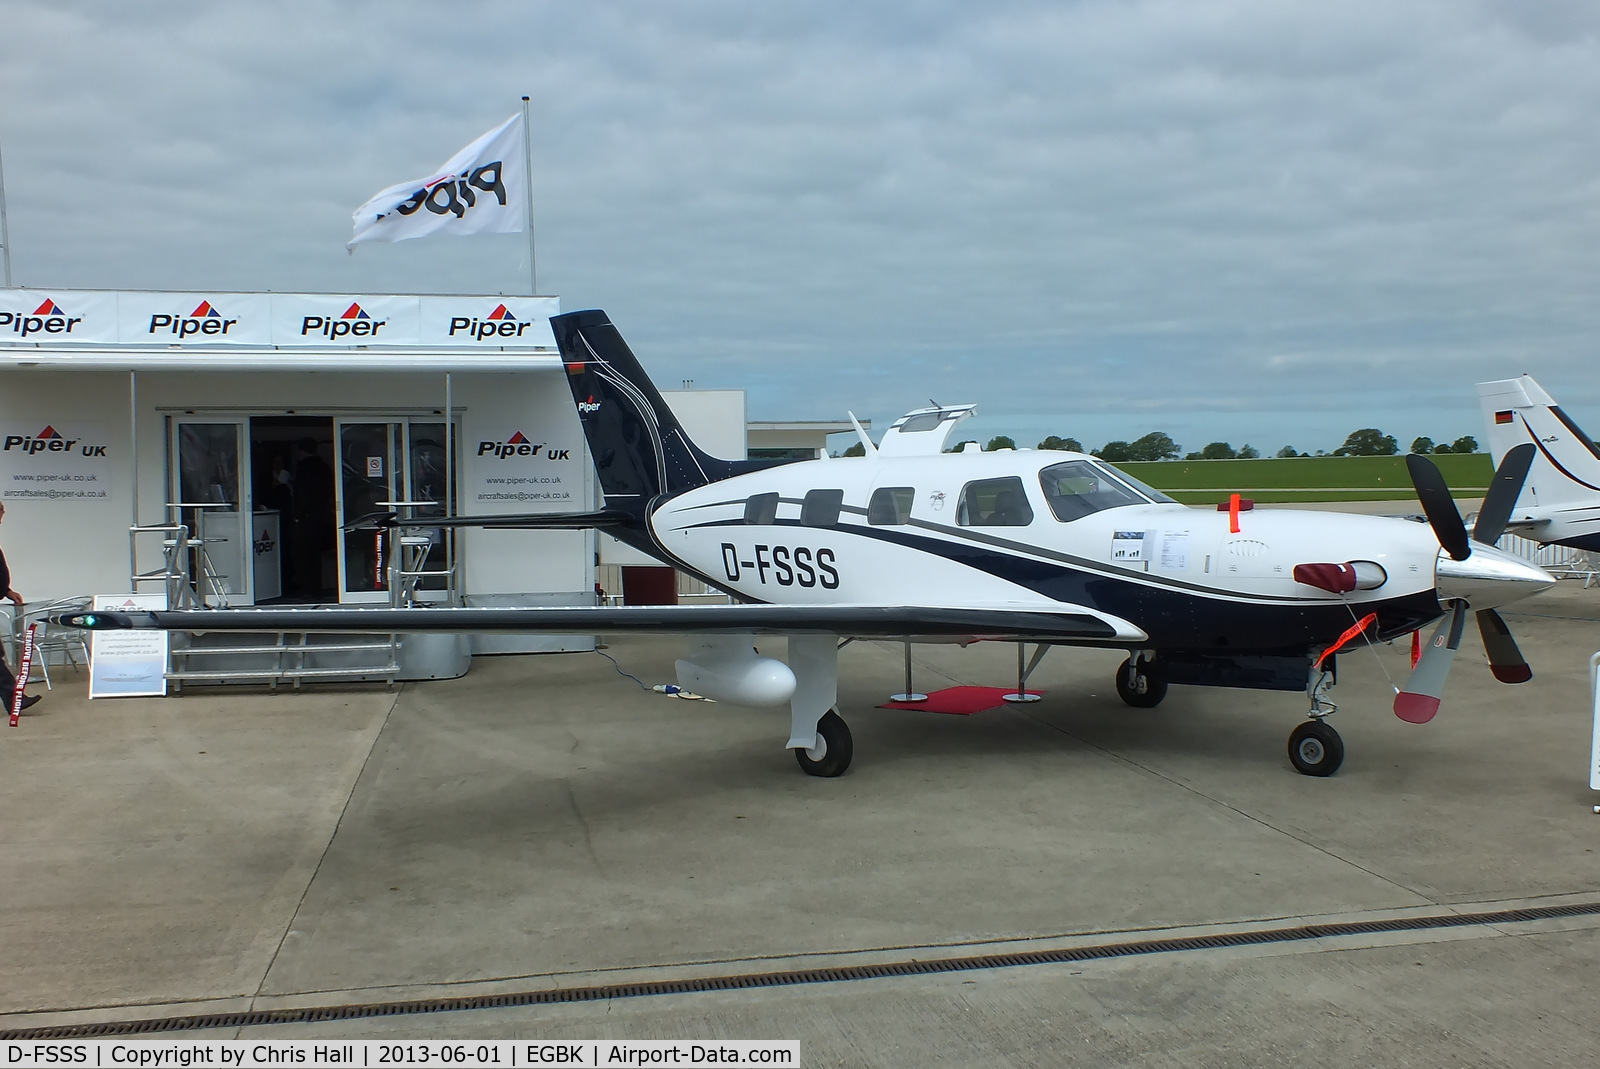 D-FSSS, 2012 Piper PA-46 Malibu Meridian C/N 4697512, at AeroExpo 2013